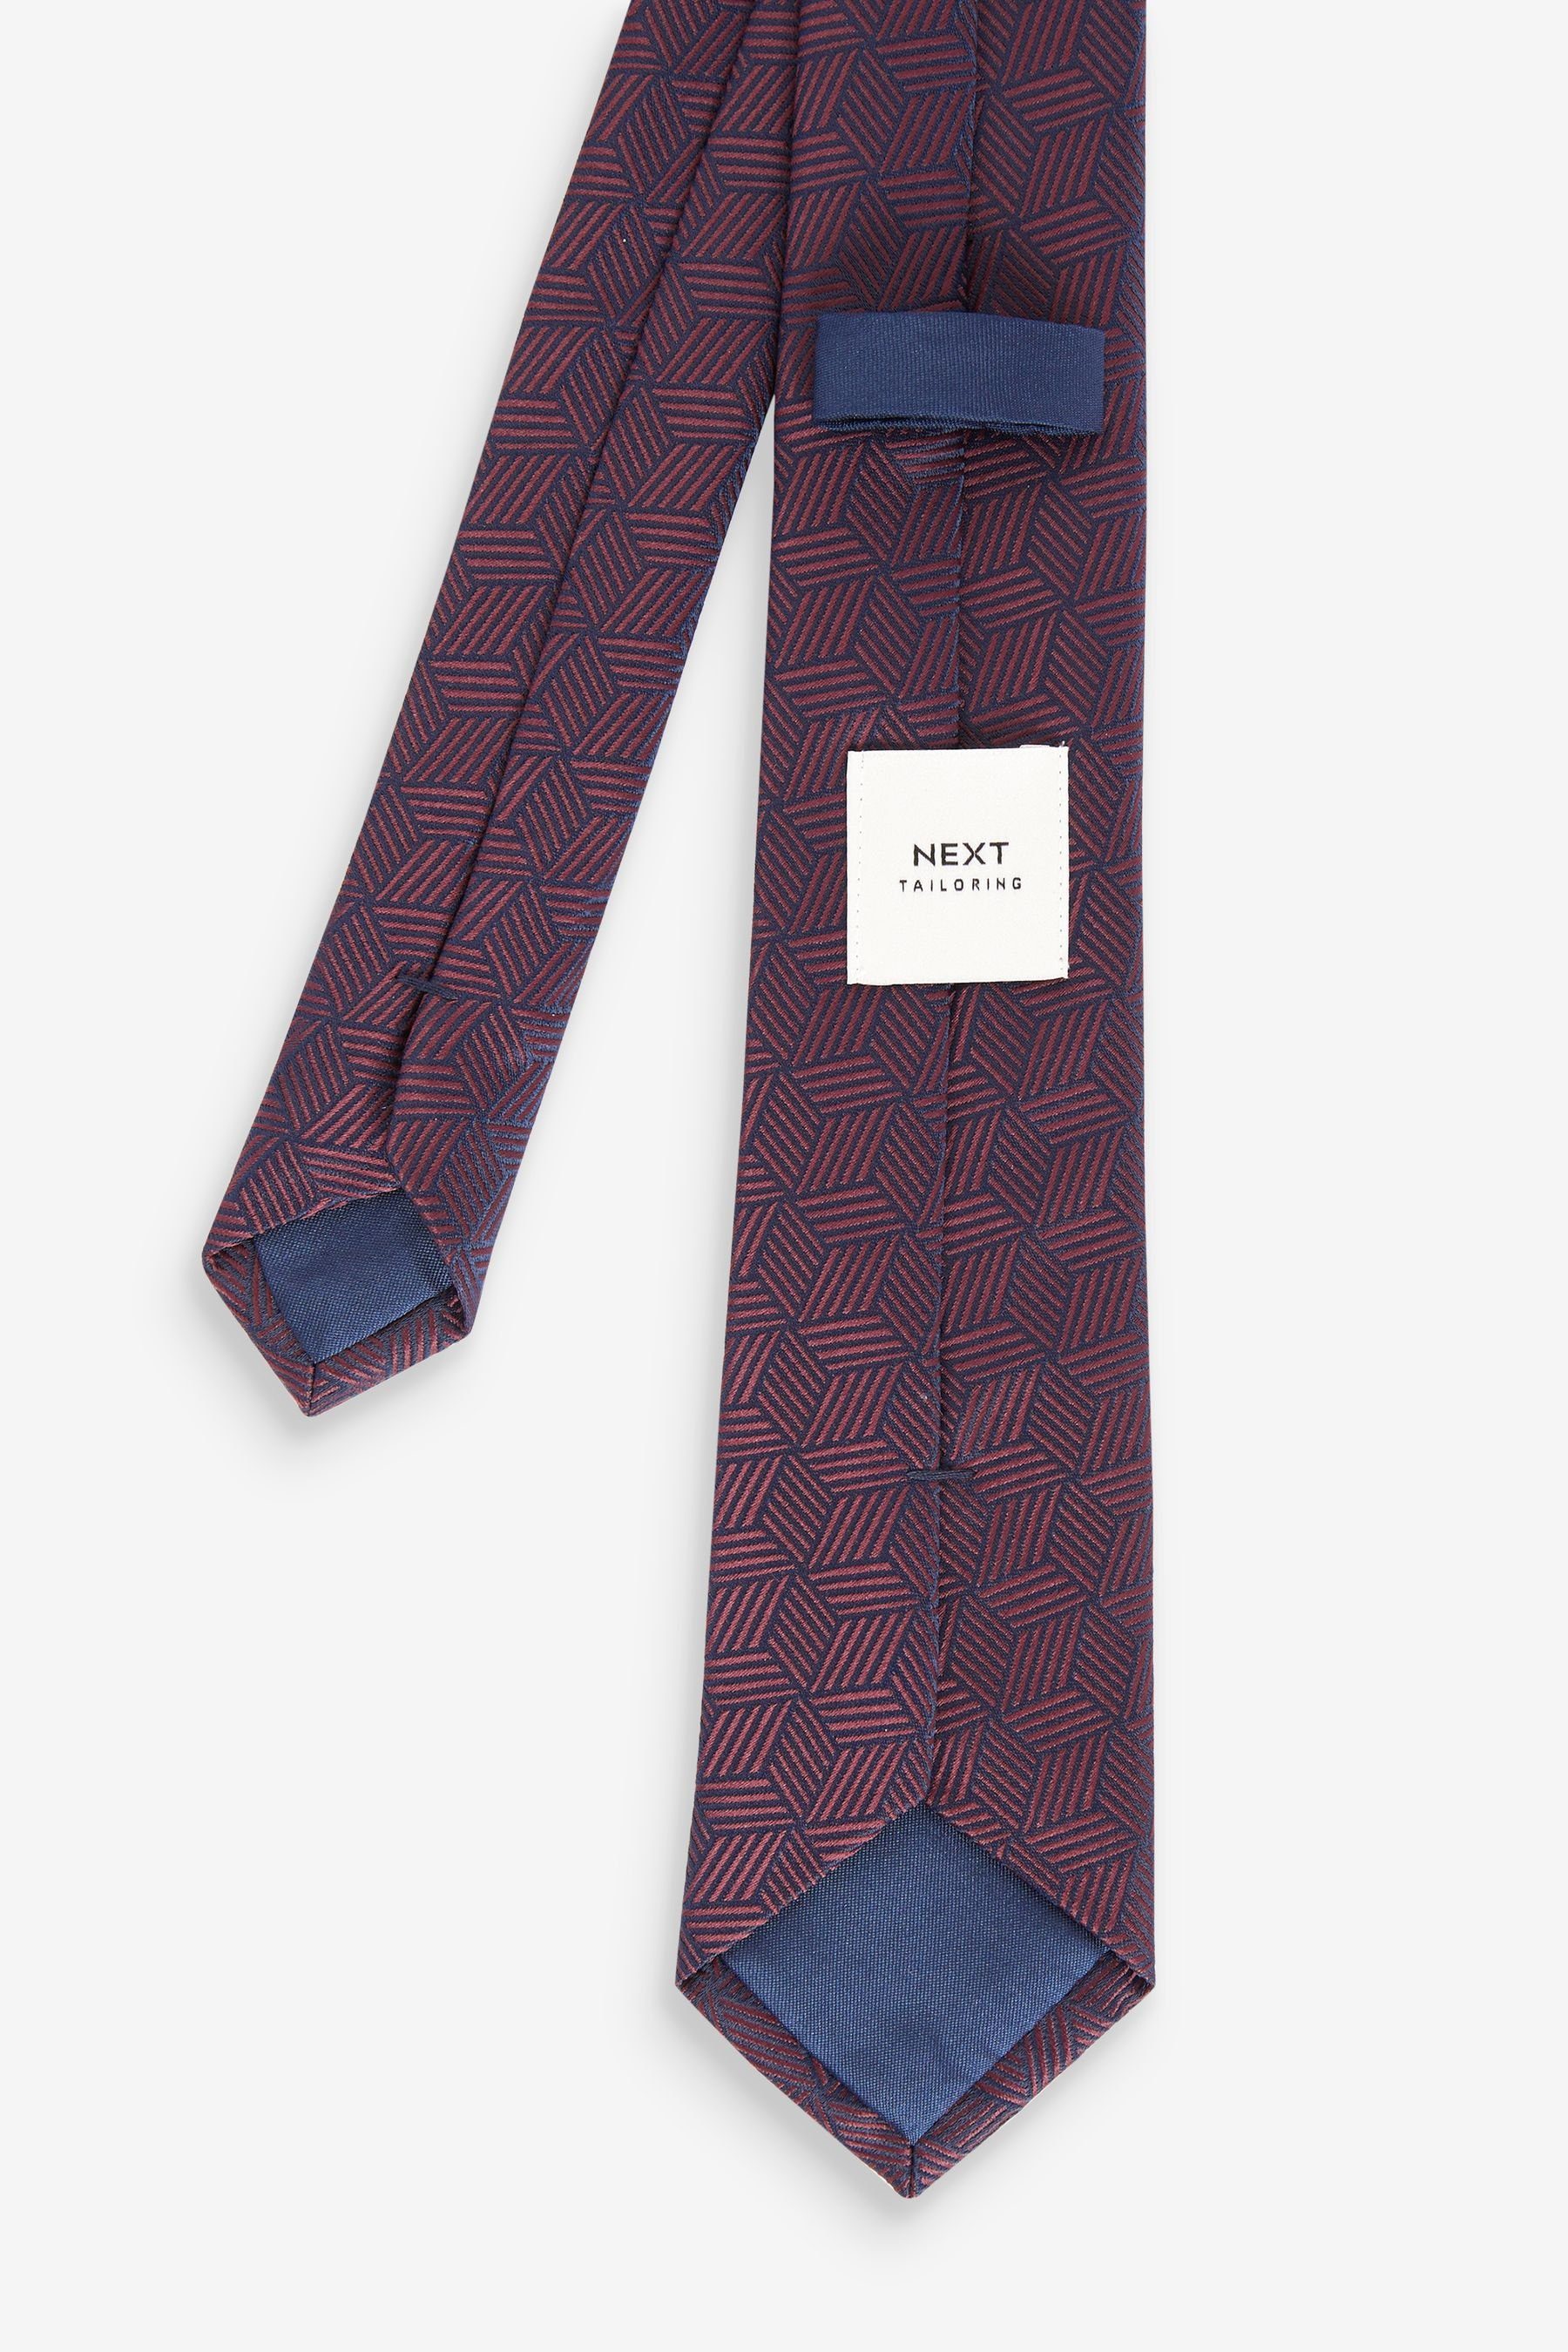 Krawatte, Next (3-St) Geometric und Slim Red/Navy Burgundy Einstecktuch Krawatte Krawattenklammer Blue